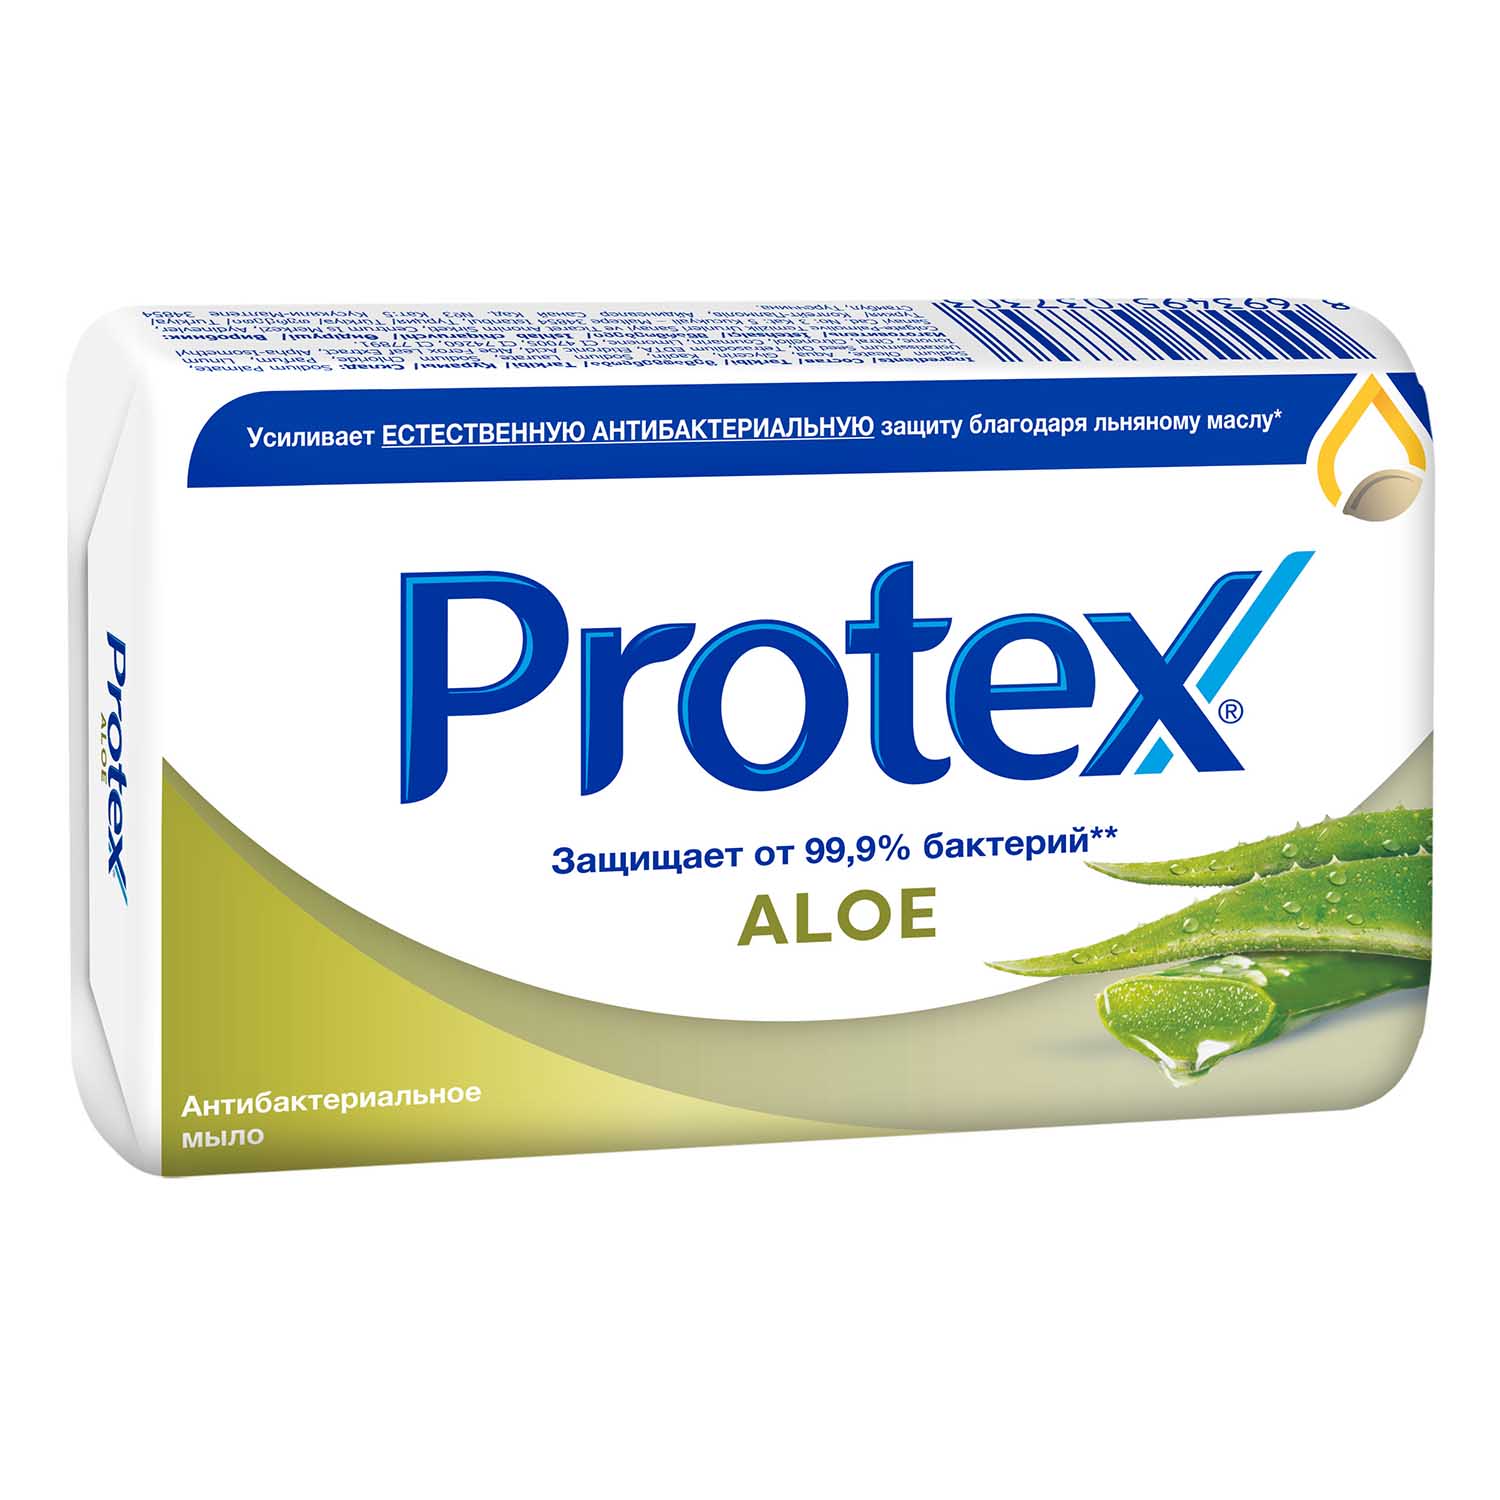 Мыло туалетное Protex Aloe антибактериальное, 90 г мыло туалетное protex ultra антибактериальное с льняным маслом 90 гр